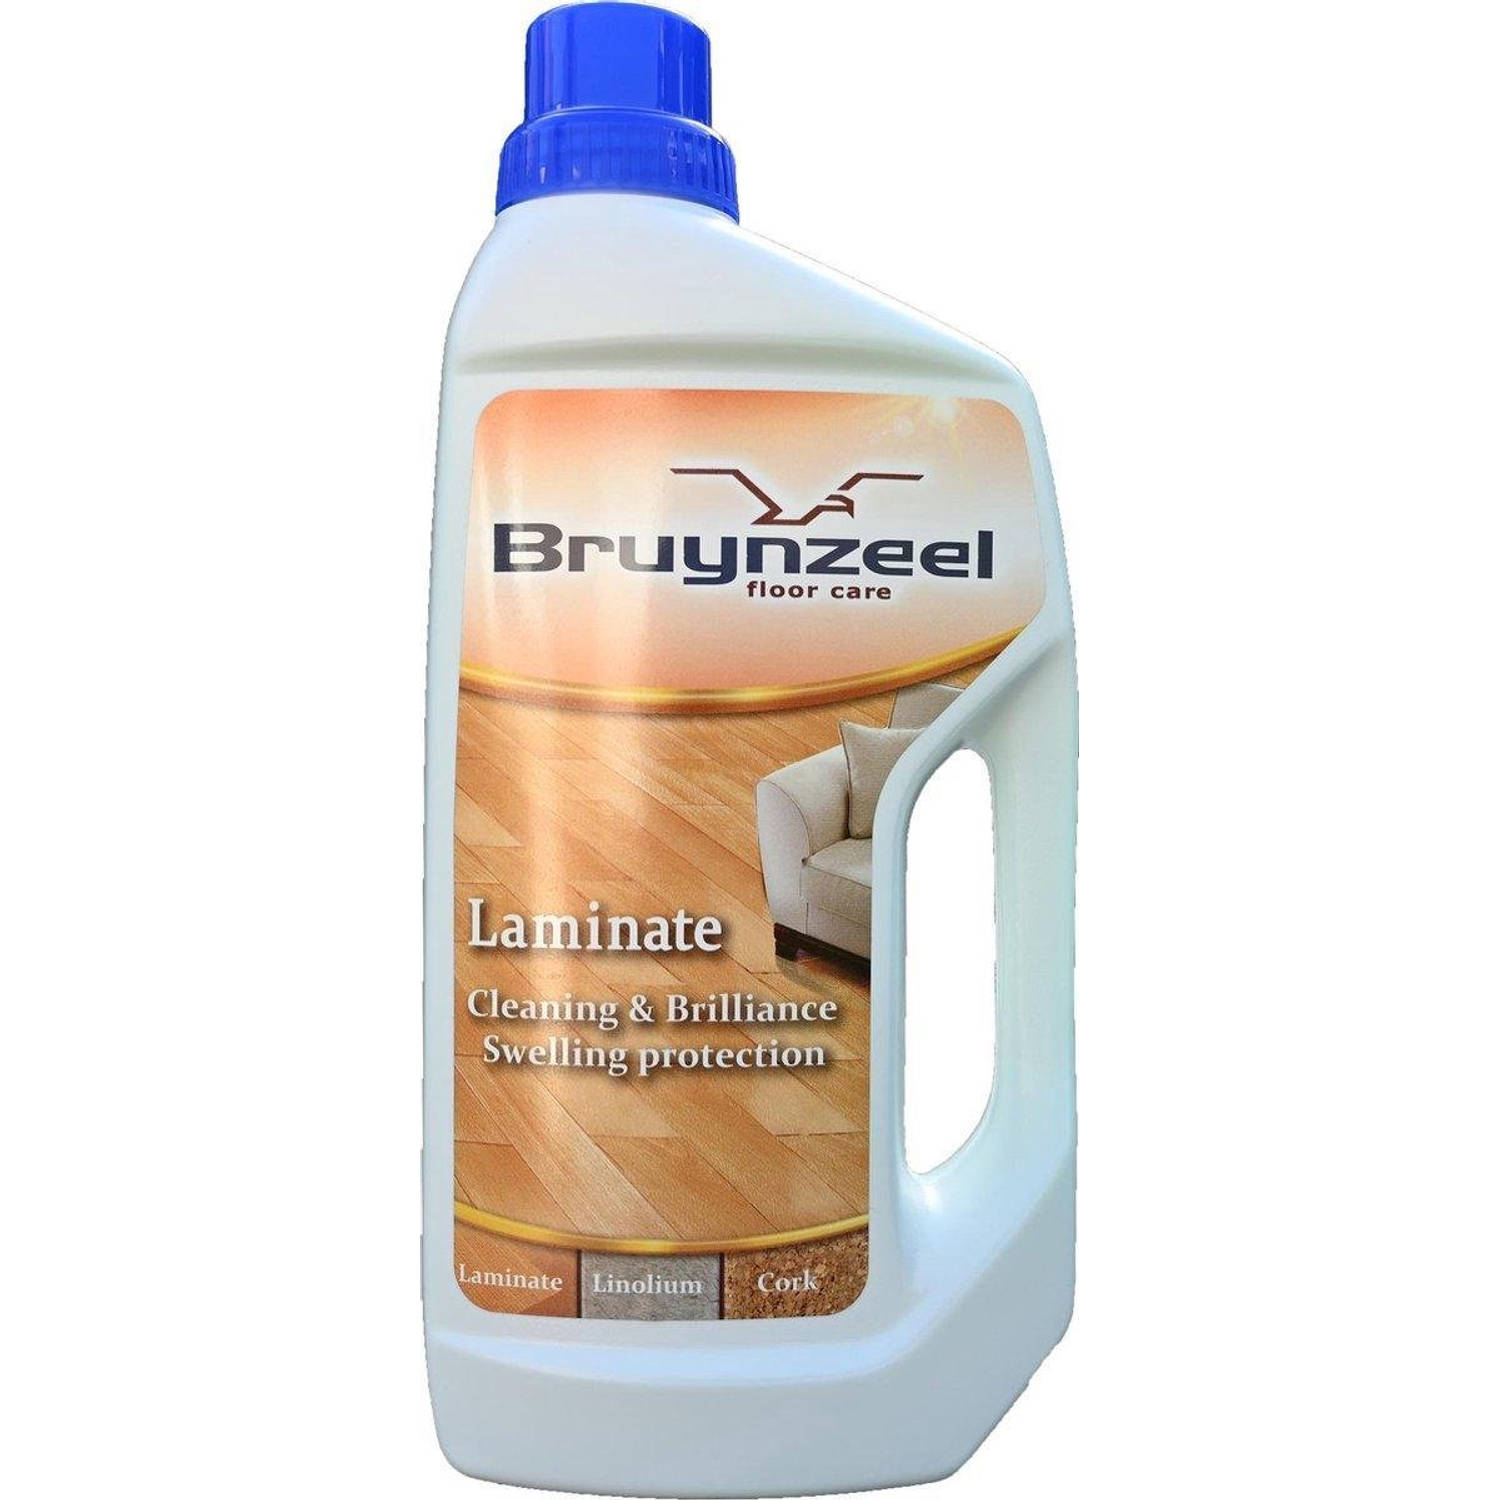 Bruynzeel laminaatreiniger vloerreiniger voor laminaat, linoleum en kurk 1 Liter